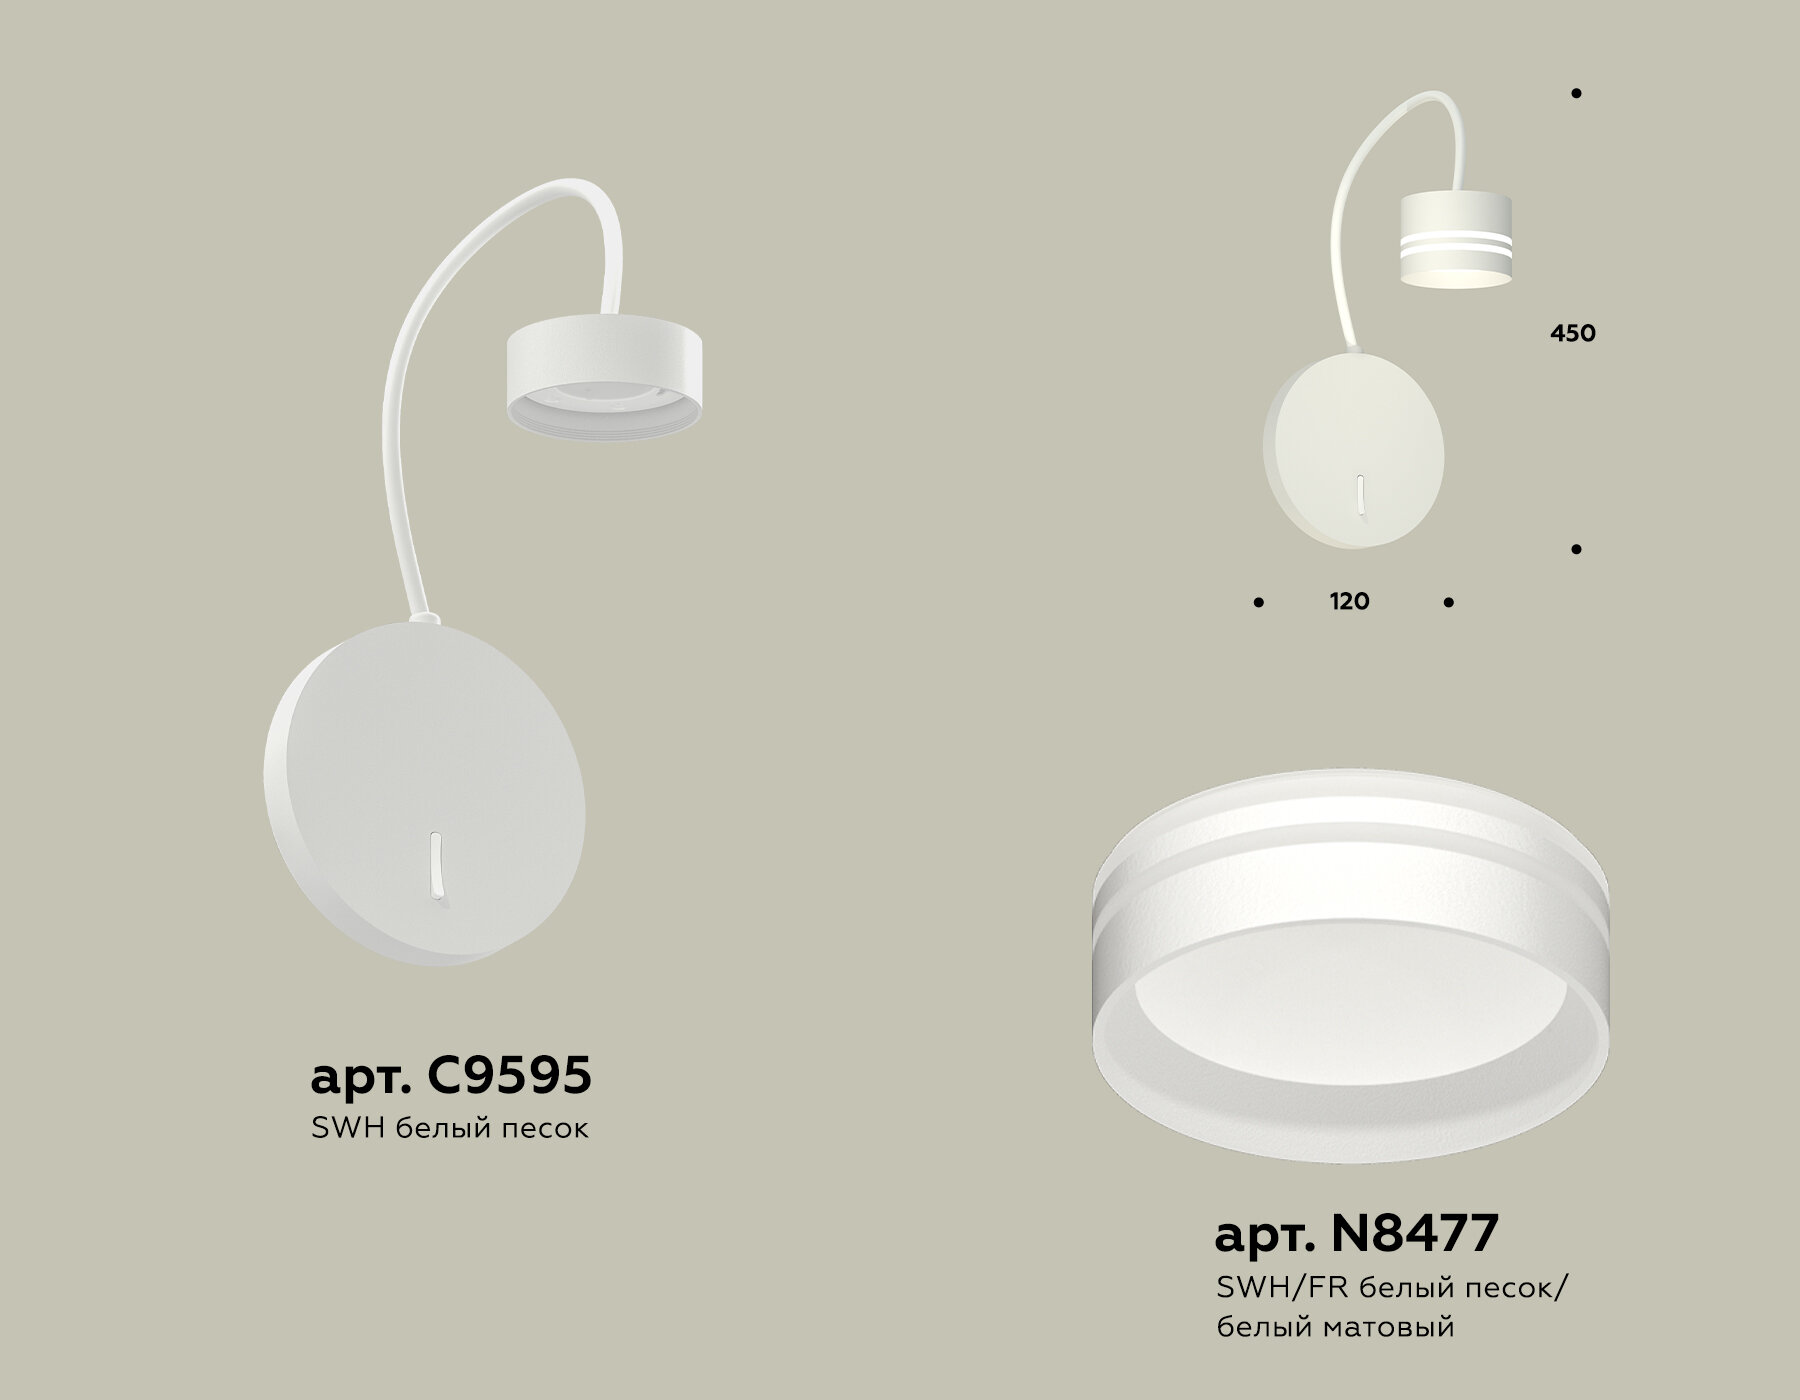 Комплект настенного светильника с выключателем и акрилом XB9595203 SWH/FR белый песок/белый матовый GX53 (C9595, N8477)